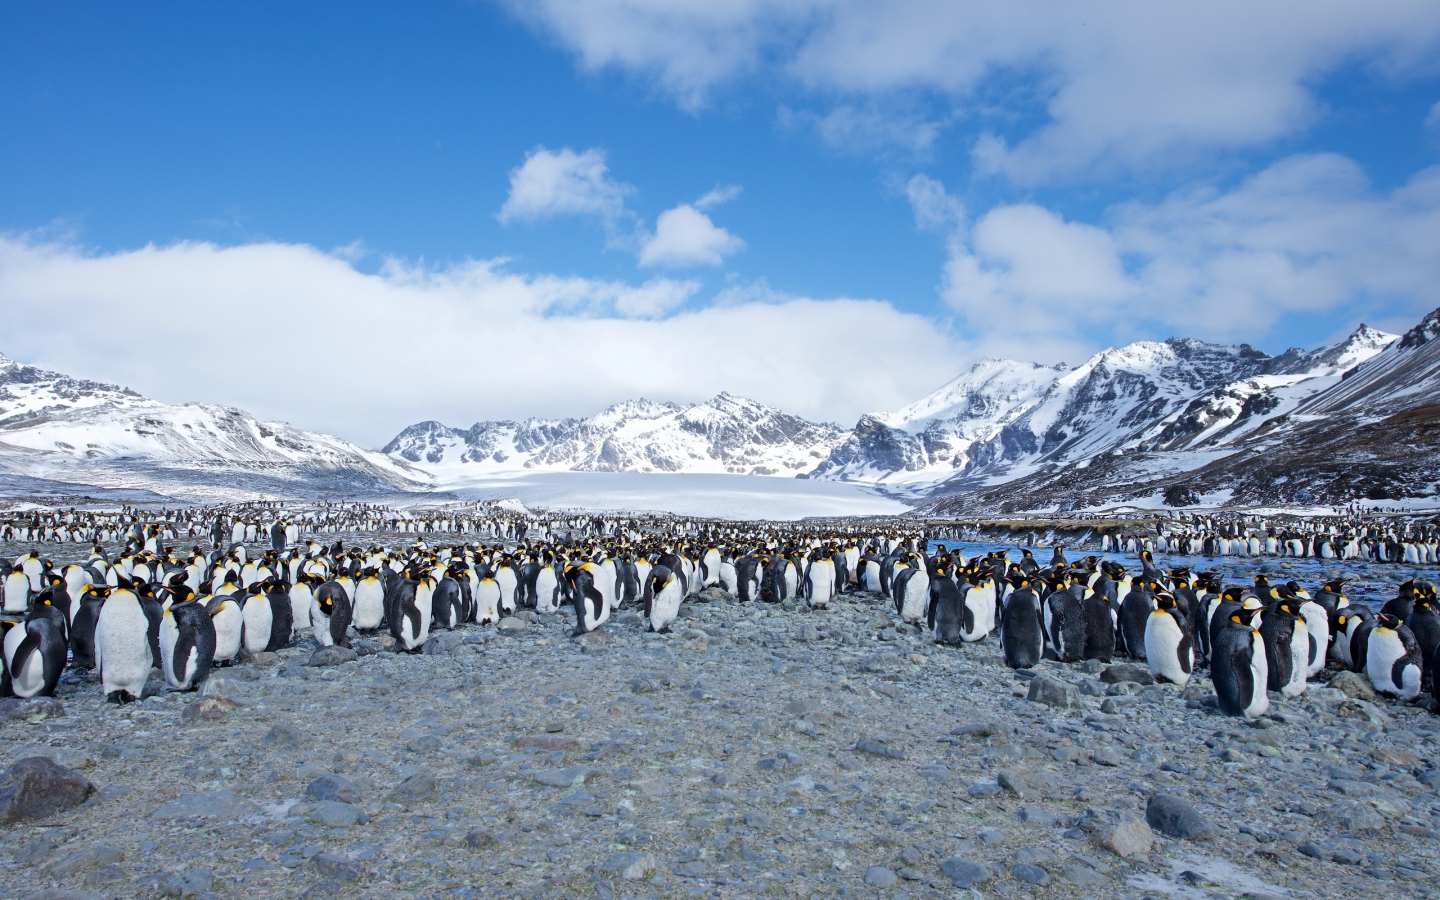 Много пингвинов на берегу на фоне заснеженных гор 